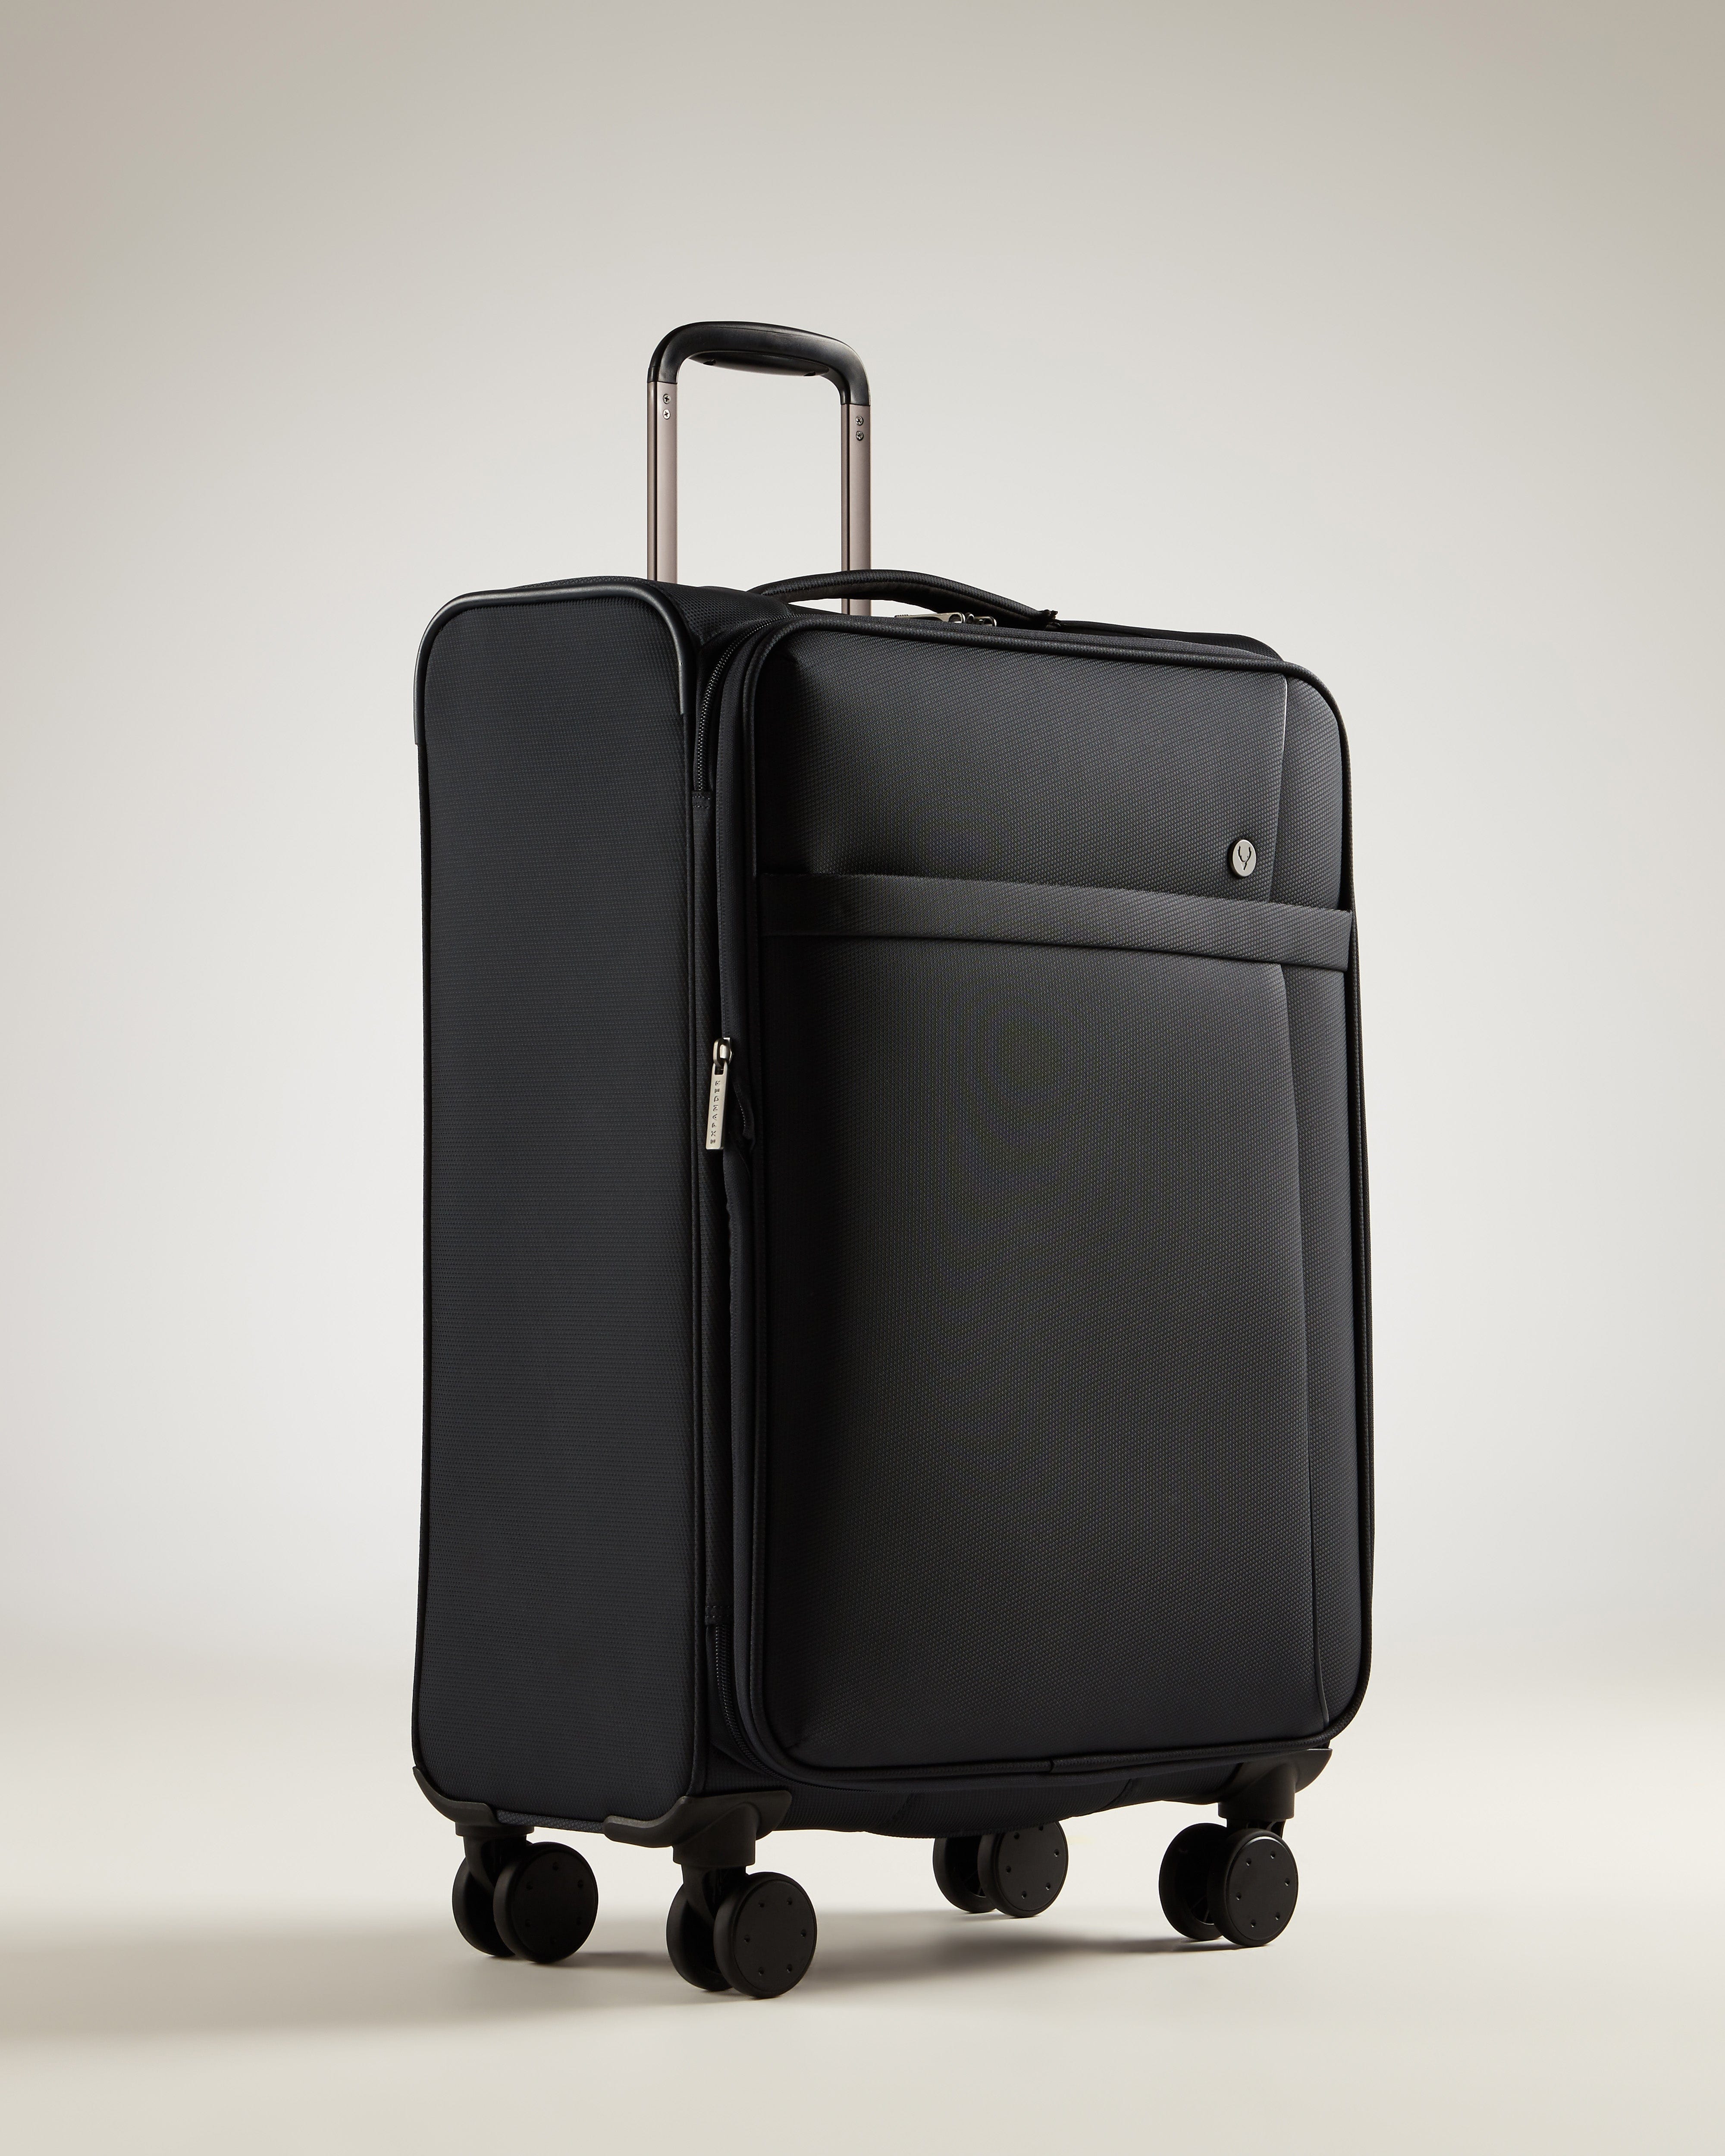 View Antler Prestwick Medium Suitcase In Navy Size 71 x 435 x 28 cm information